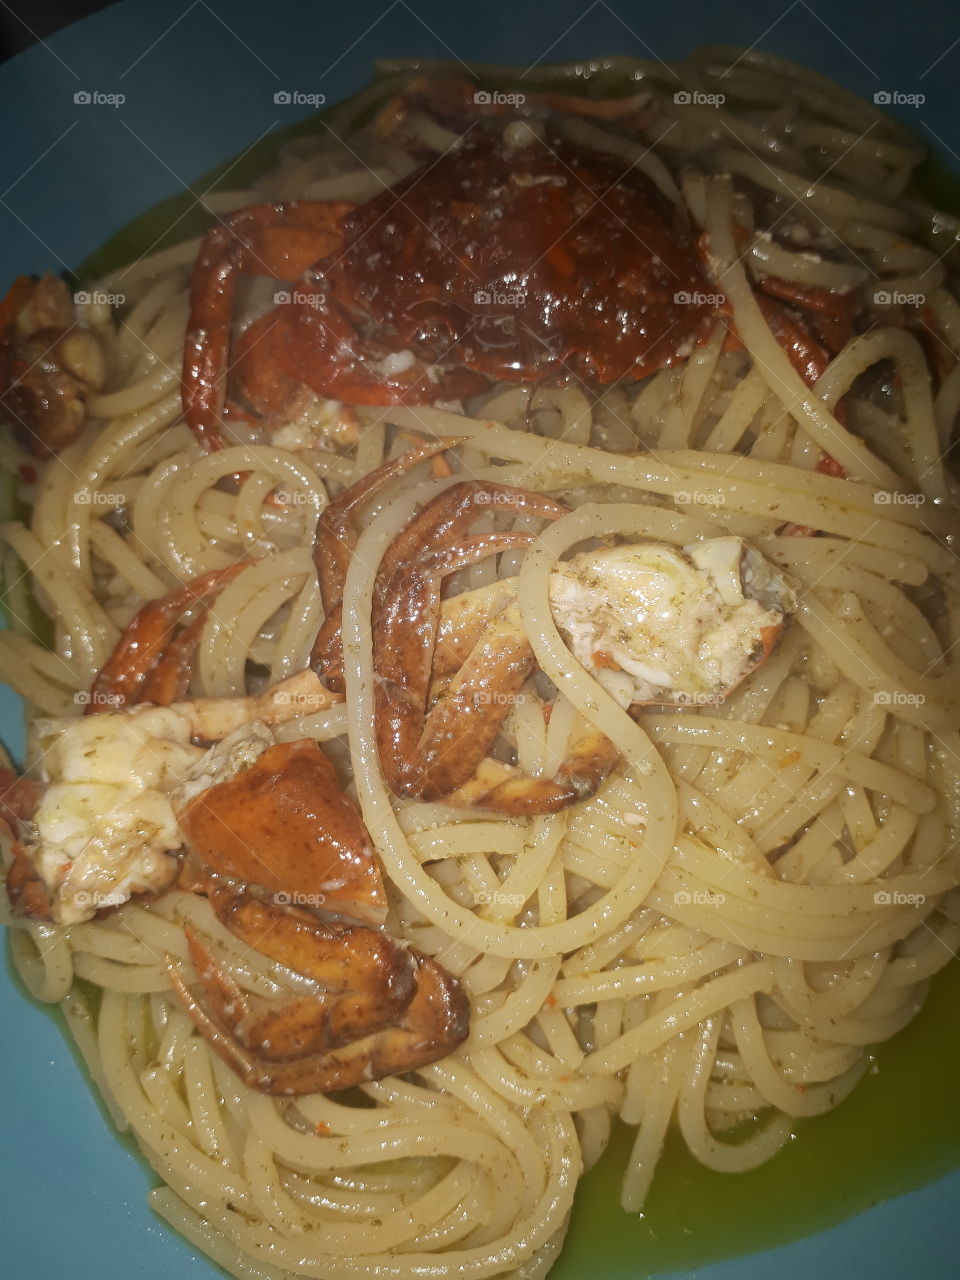 spaghetti al granchio blù.....
spaghetti with blue crab....
by Raffaello